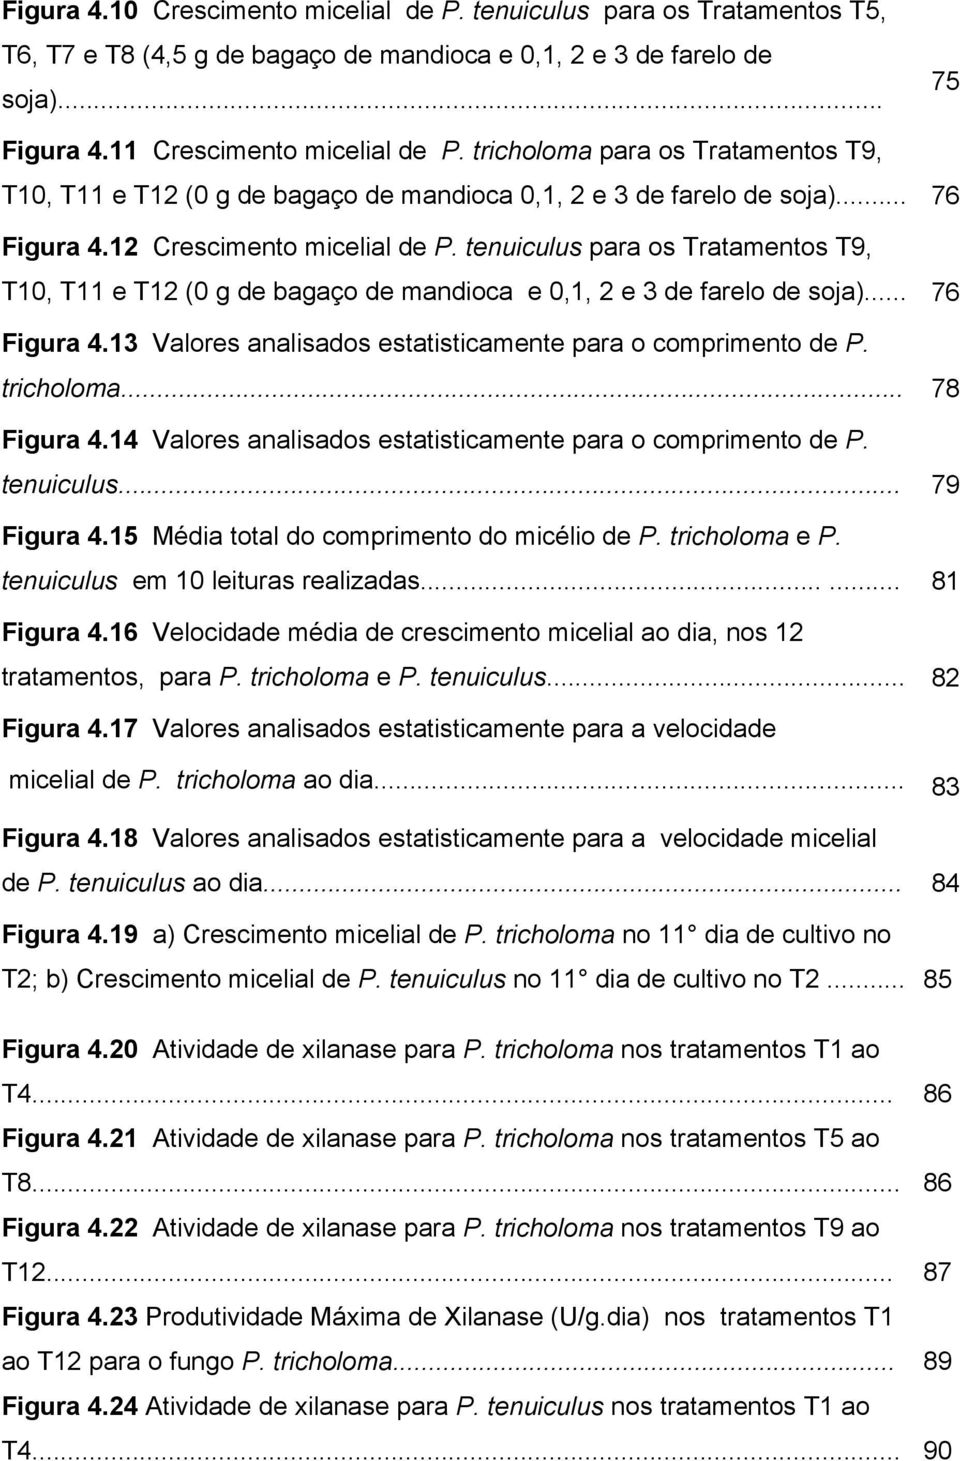 tenuiculus para os Tratamentos T9, T10, T11 e T12 (0 g de bagaço de mandioca e 0,1, 2 e 3 de farelo de soja)... 76 Figura 4.13 Valores analisados estatisticamente para o comprimento de P. tricholoma.